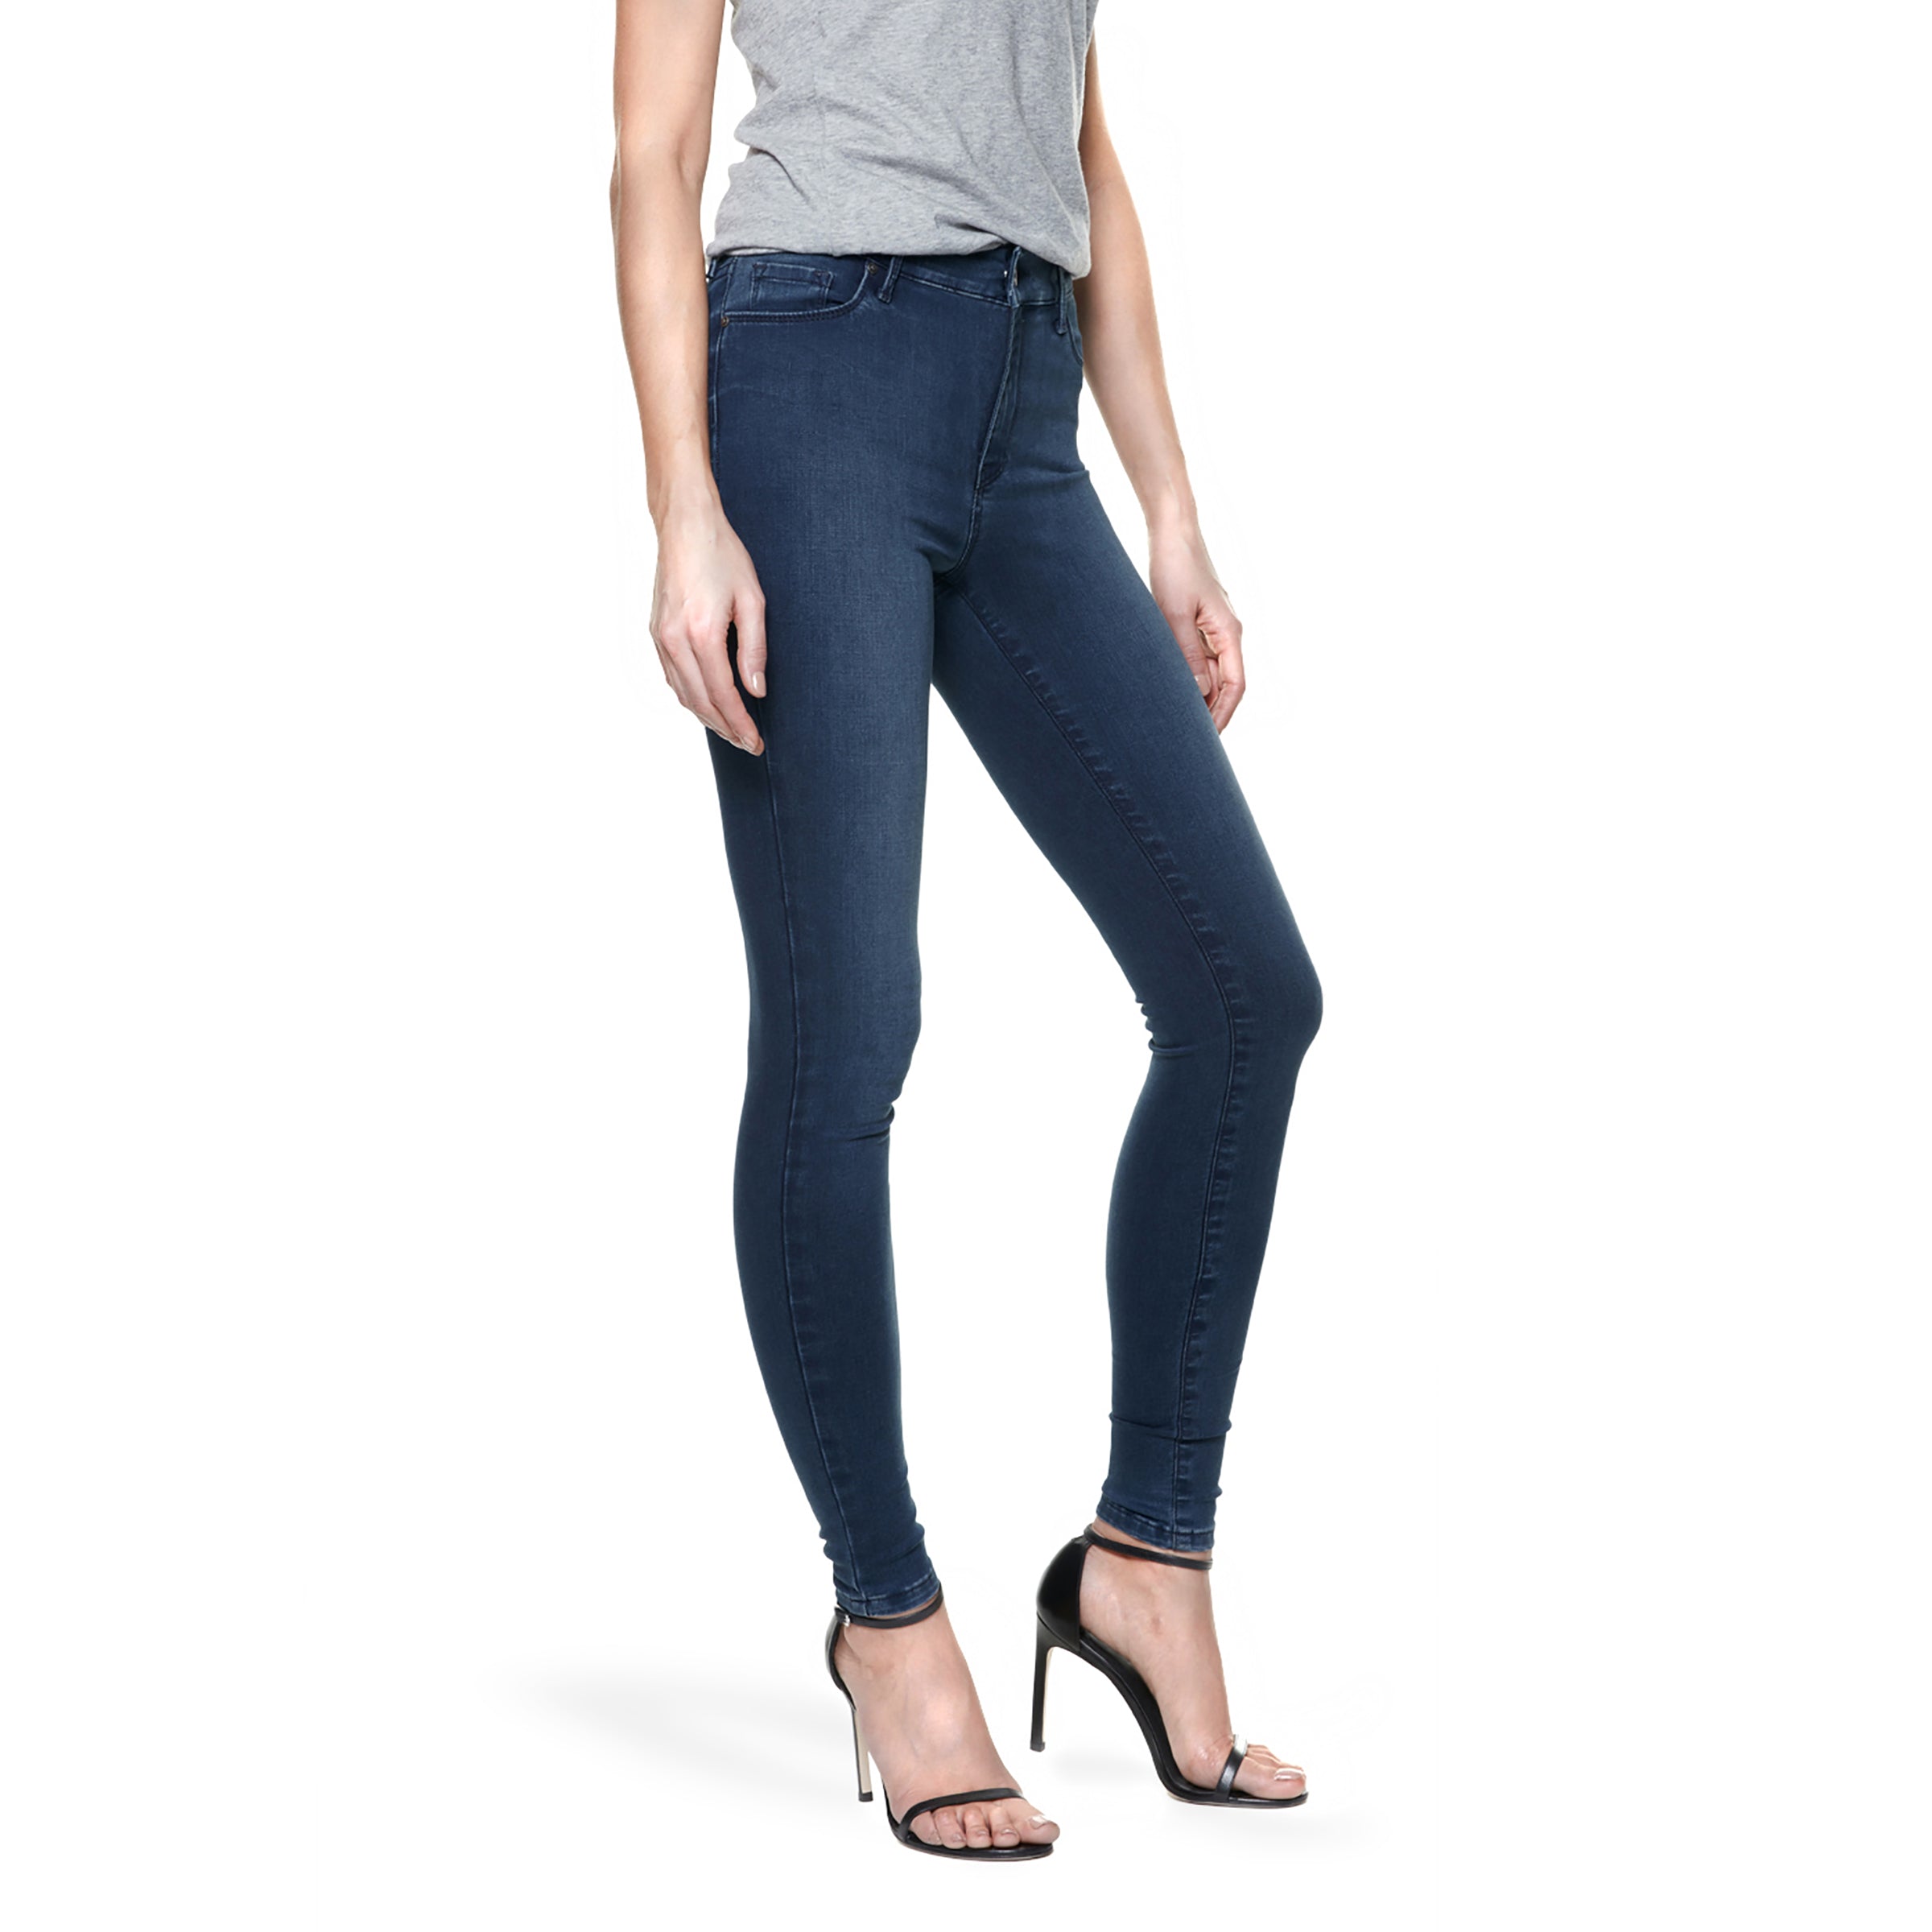 Women wearing Bleu Médium High Rise Skinny Ann Jeans